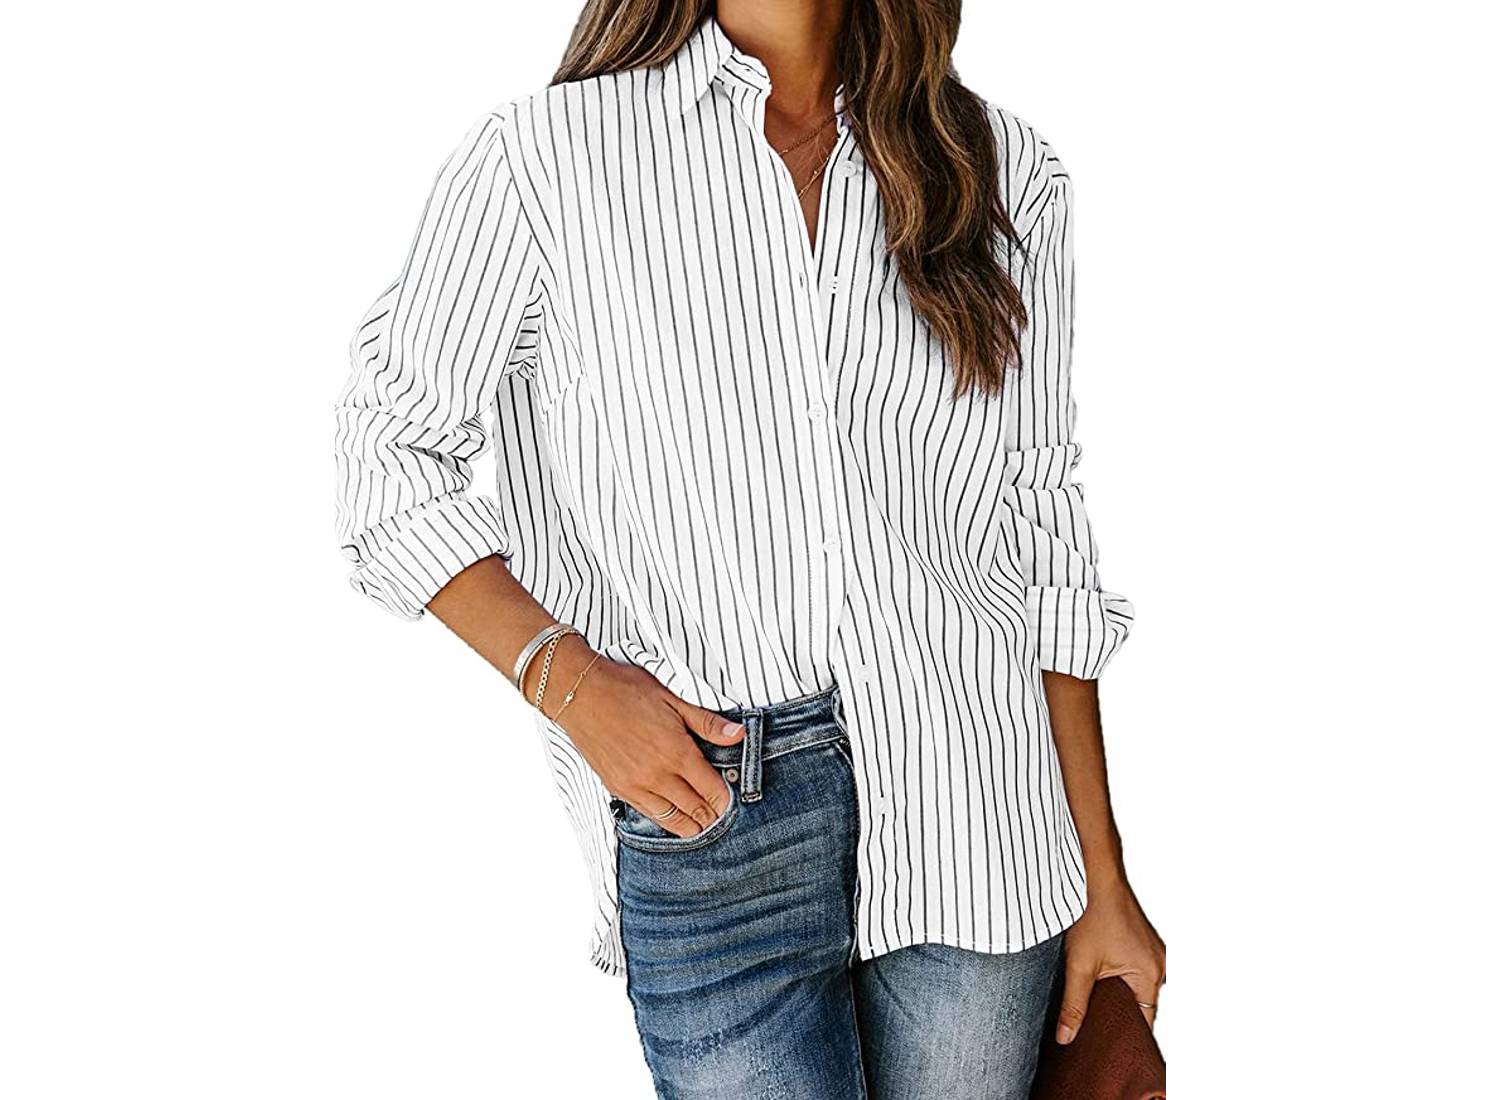 काली पिन स्ट्रिप्स और जींस की एक जोड़ी के साथ एक सफेद बटन-अप शर्ट पहने एक महिला